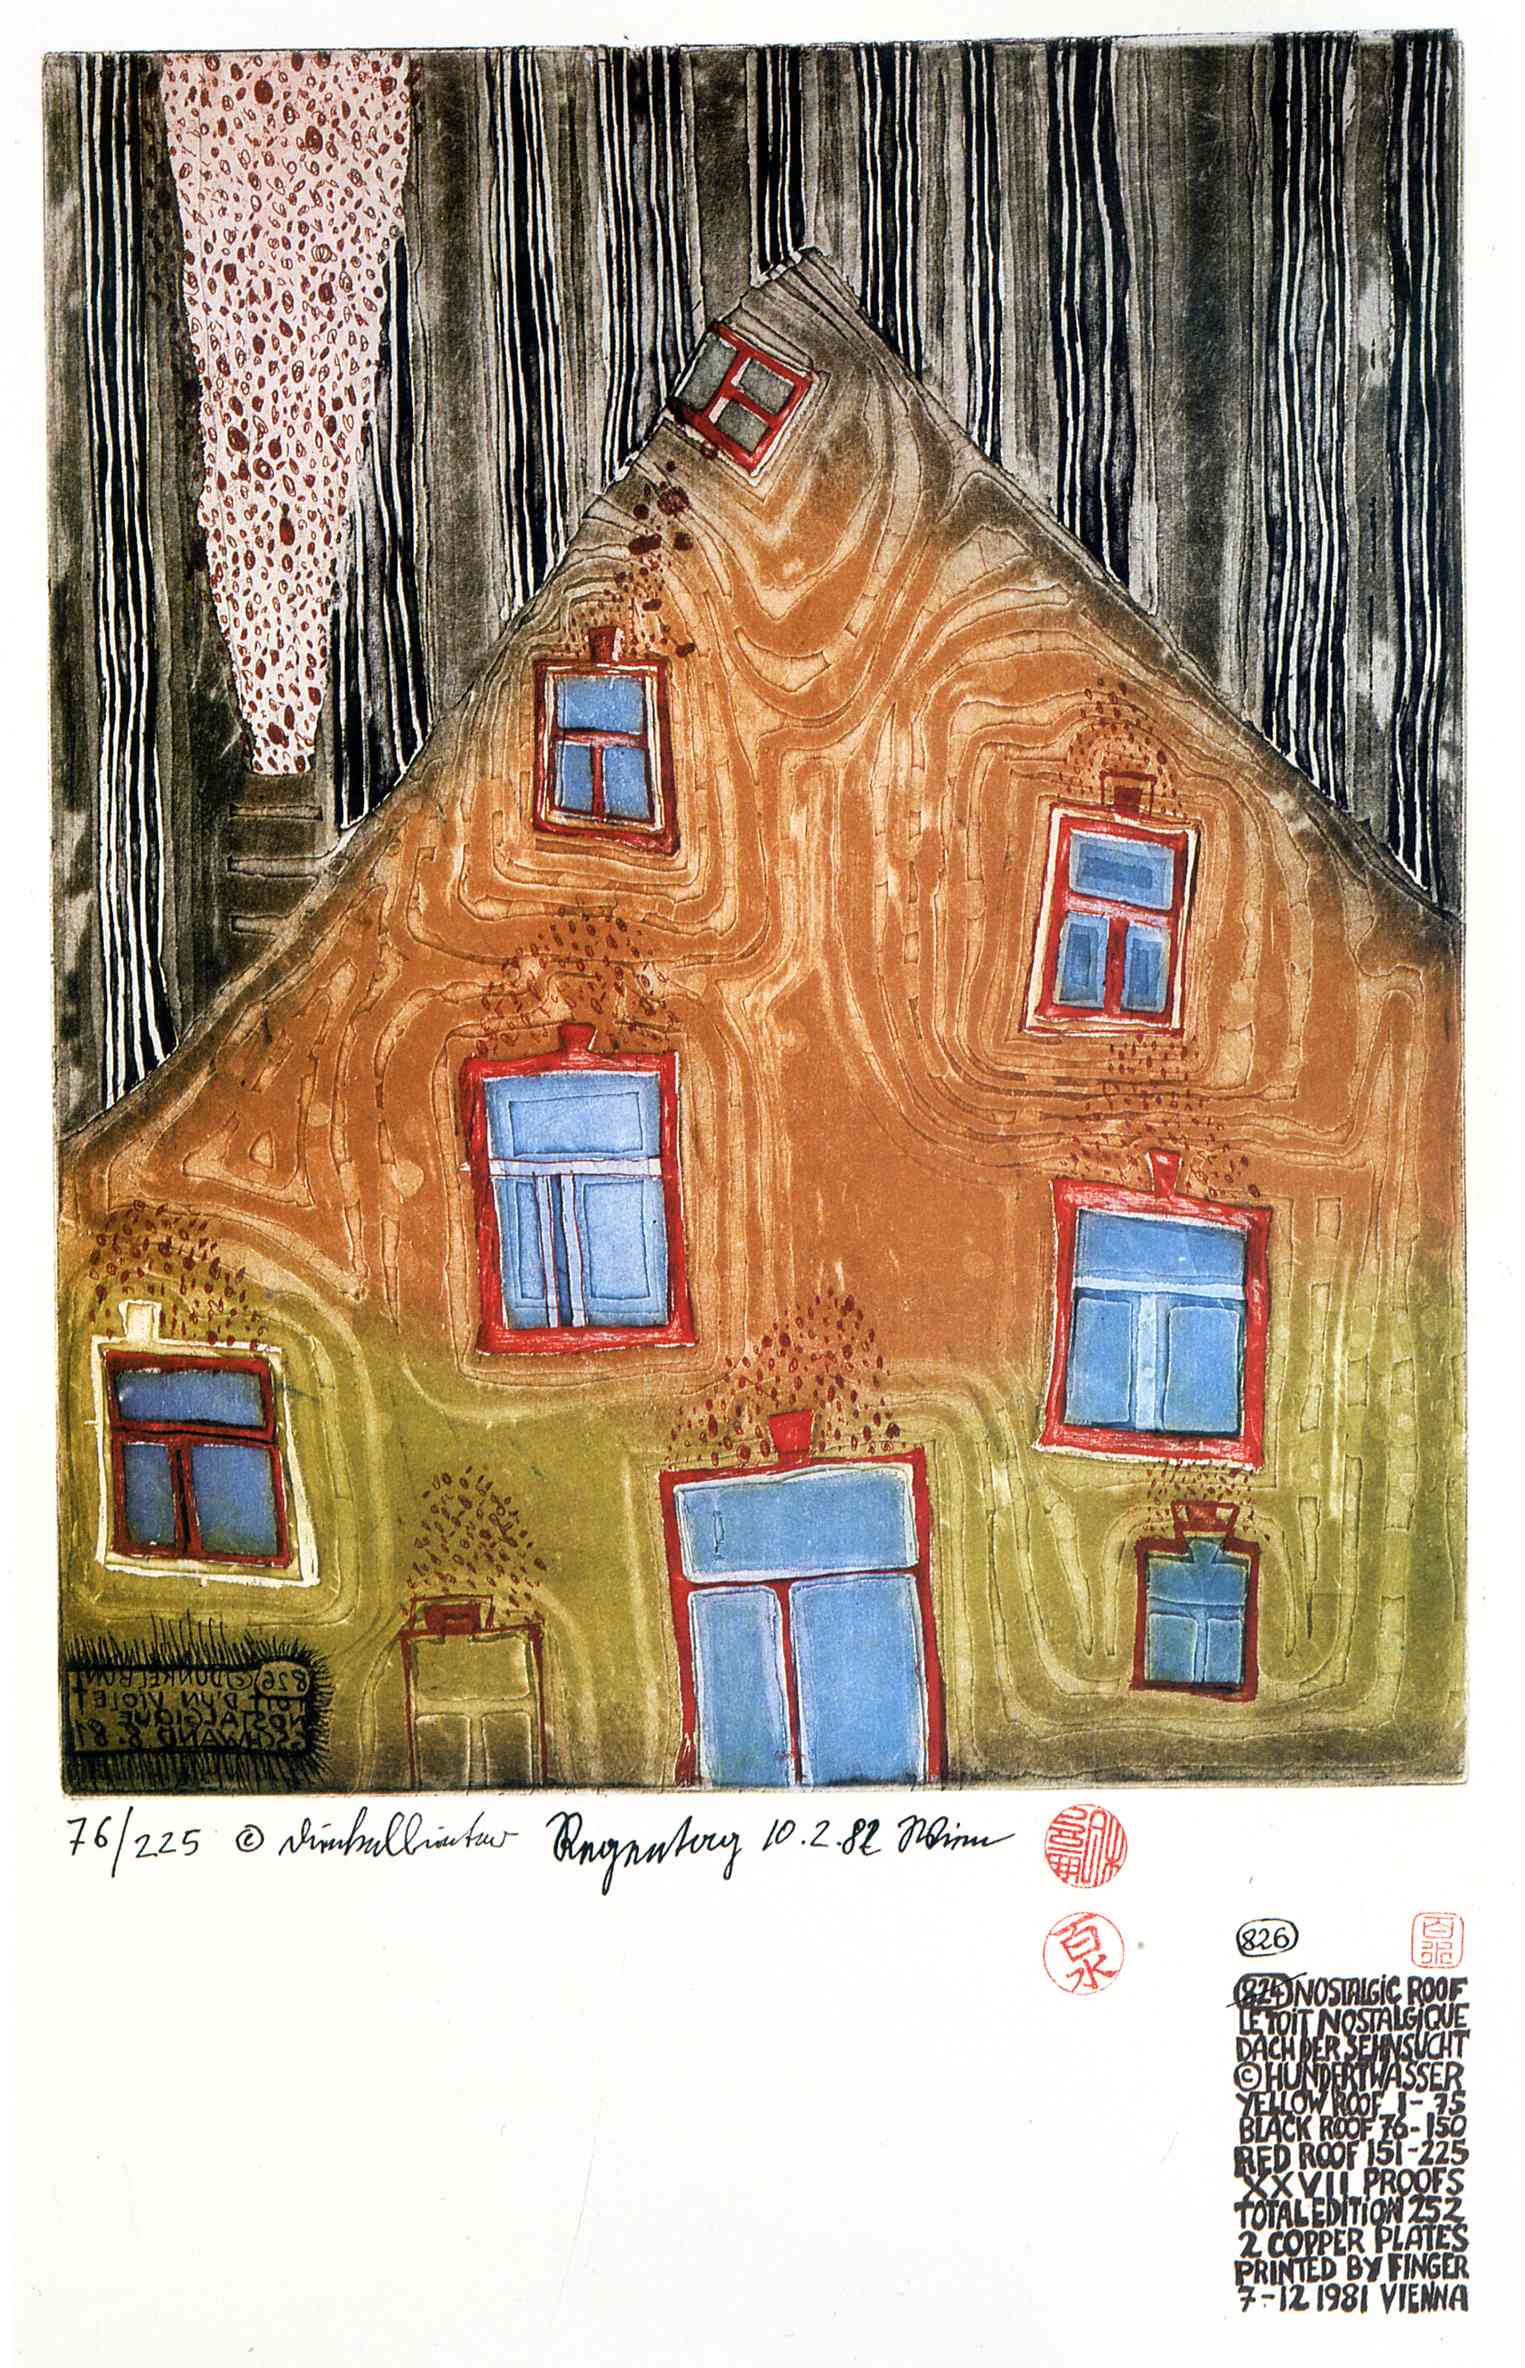 Friedensreich Hundertwasser December 15 1928 February 19